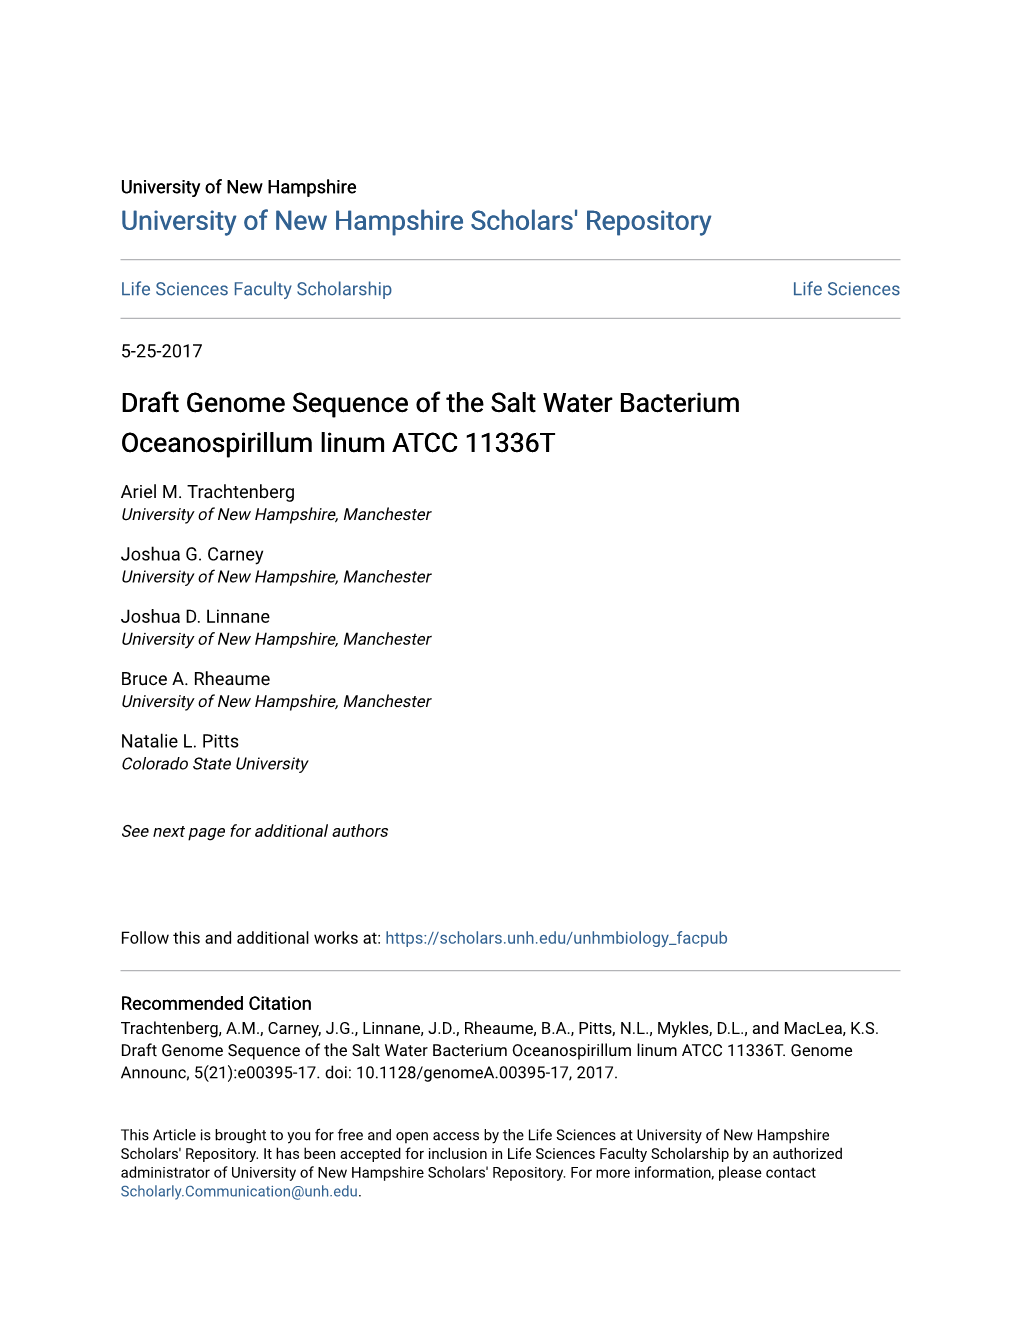 Draft Genome Sequence of the Salt Water Bacterium Oceanospirillum Linum ATCC 11336T